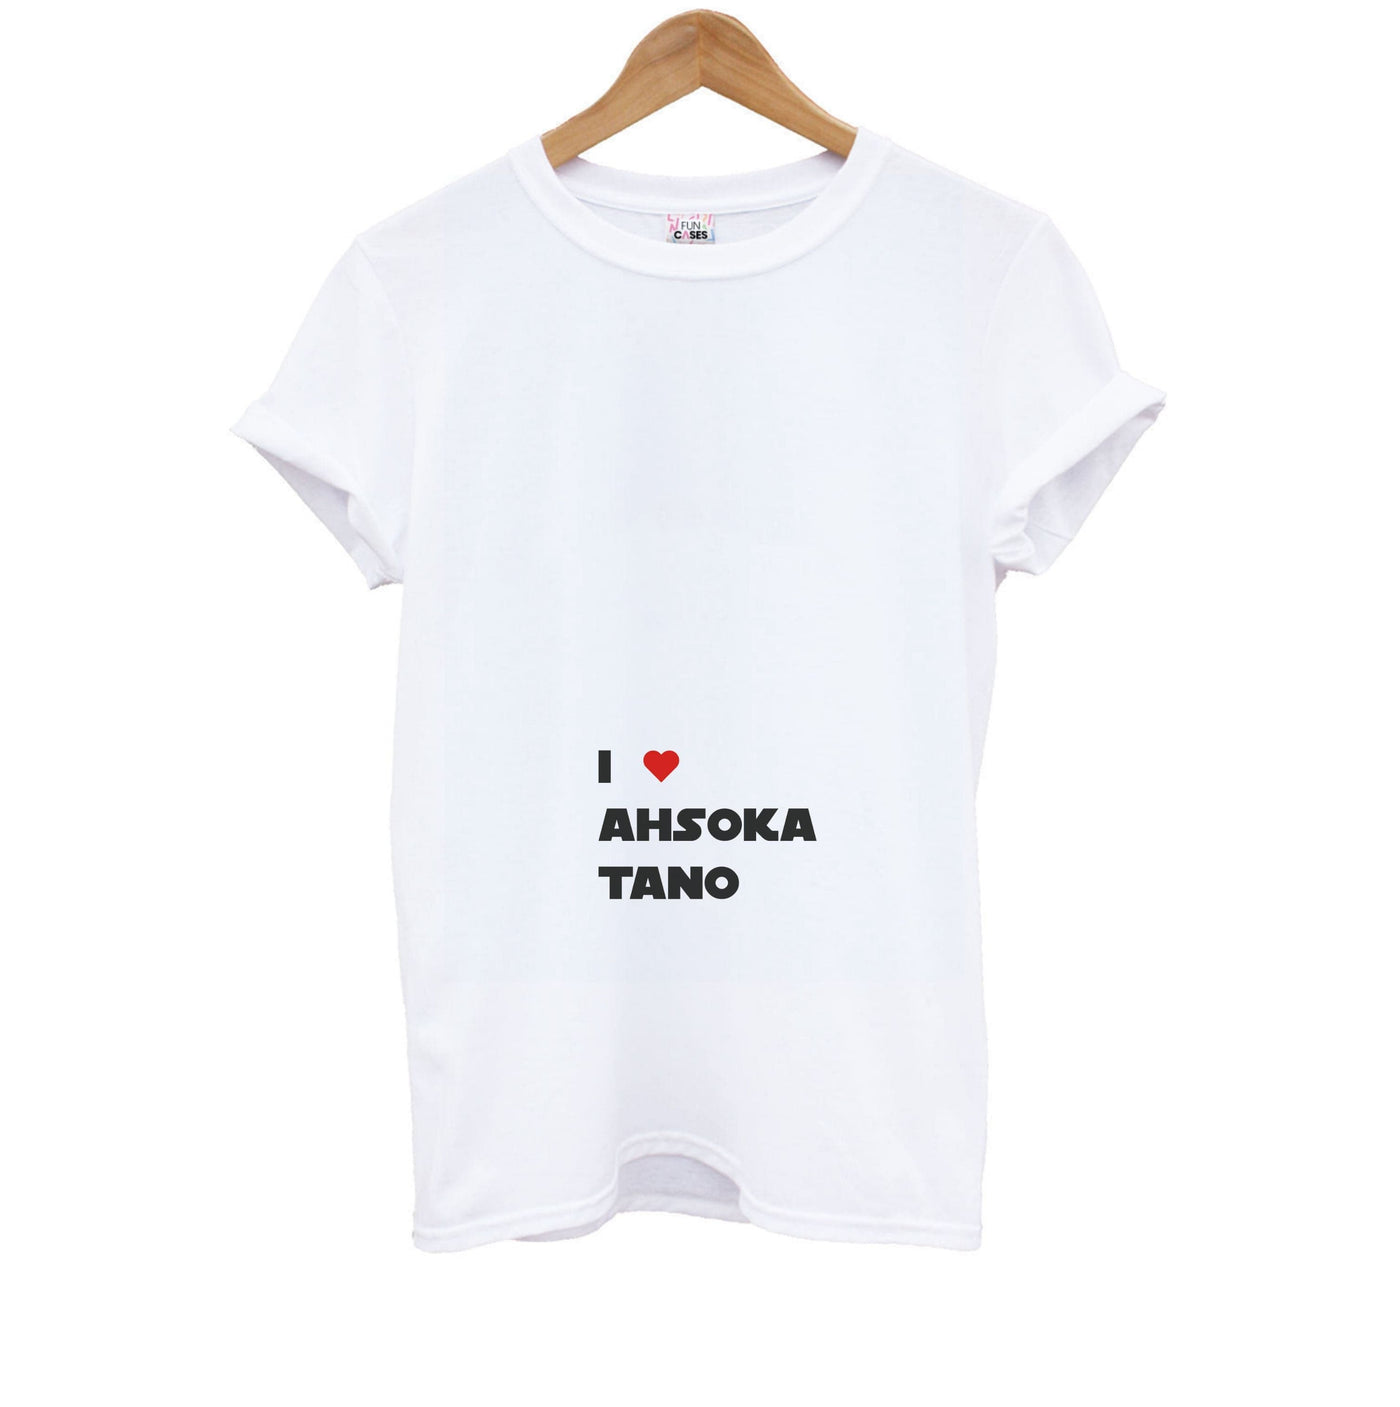 I Love Ahsoka Tano - Tales Of The Jedi  Kids T-Shirt